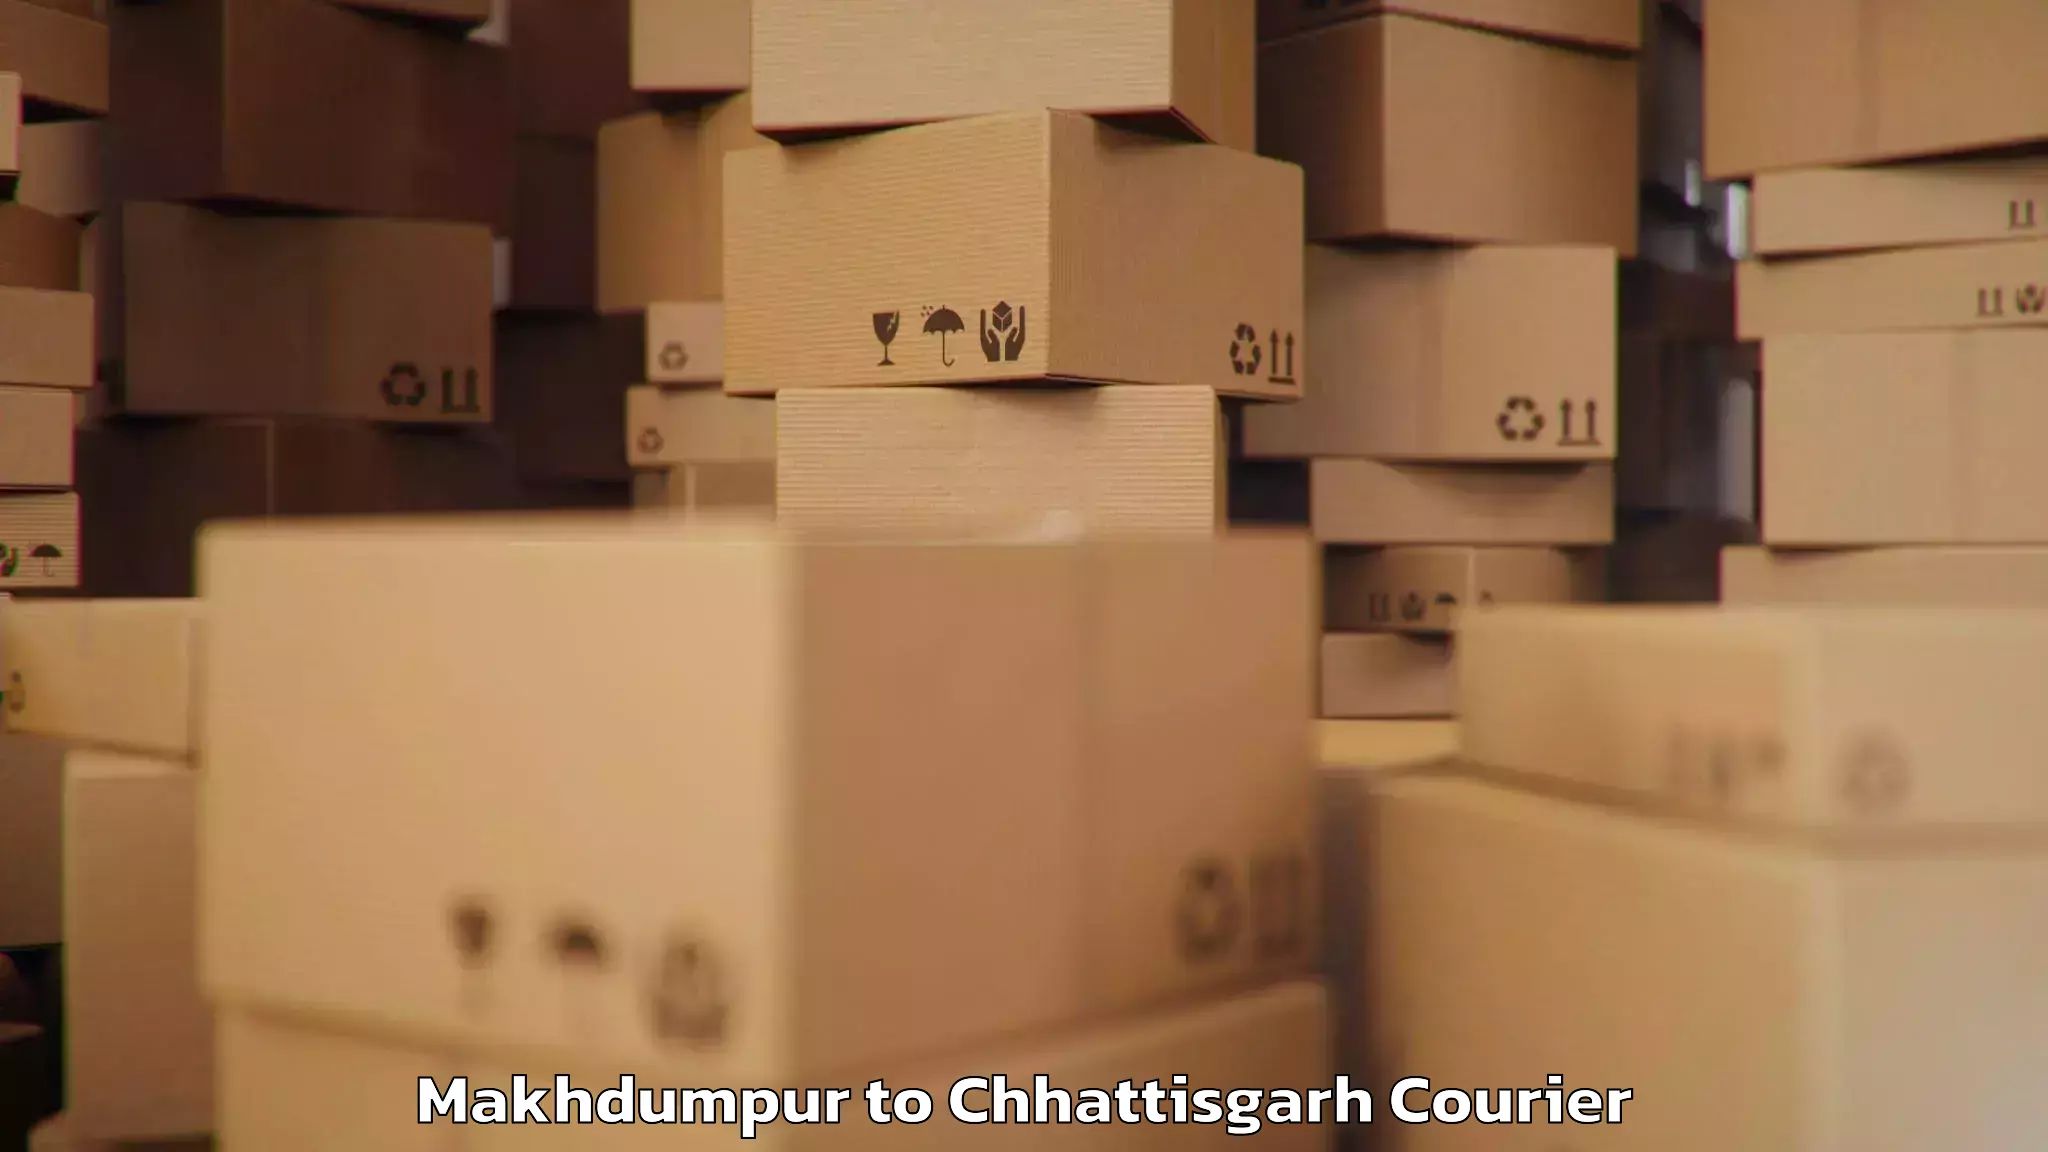 Global baggage shipping Makhdumpur to Bastar